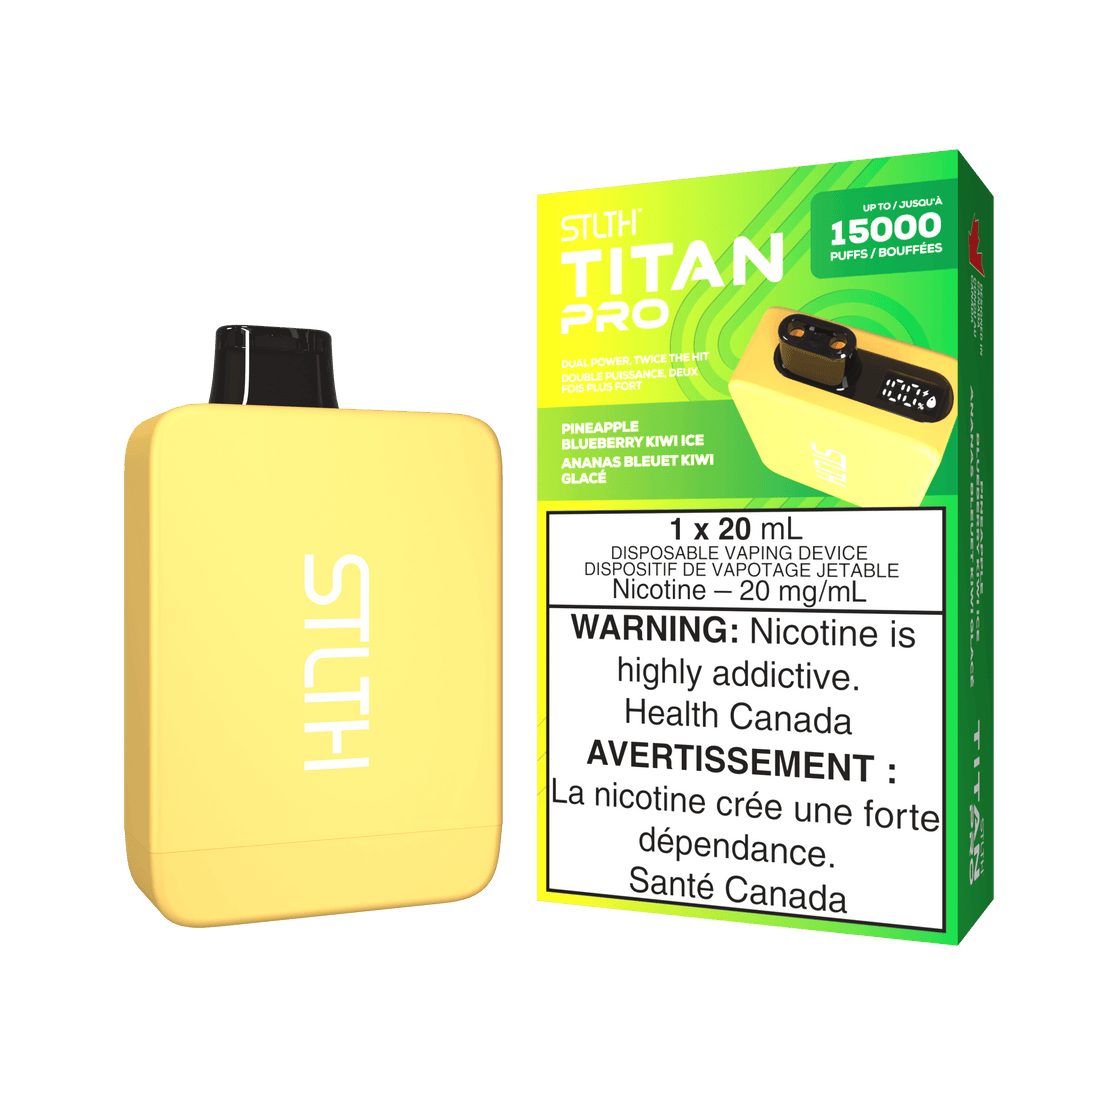 STLTH Titan Pro - Pineapple Blueberry Kiwi Ice - Vapor Shoppe